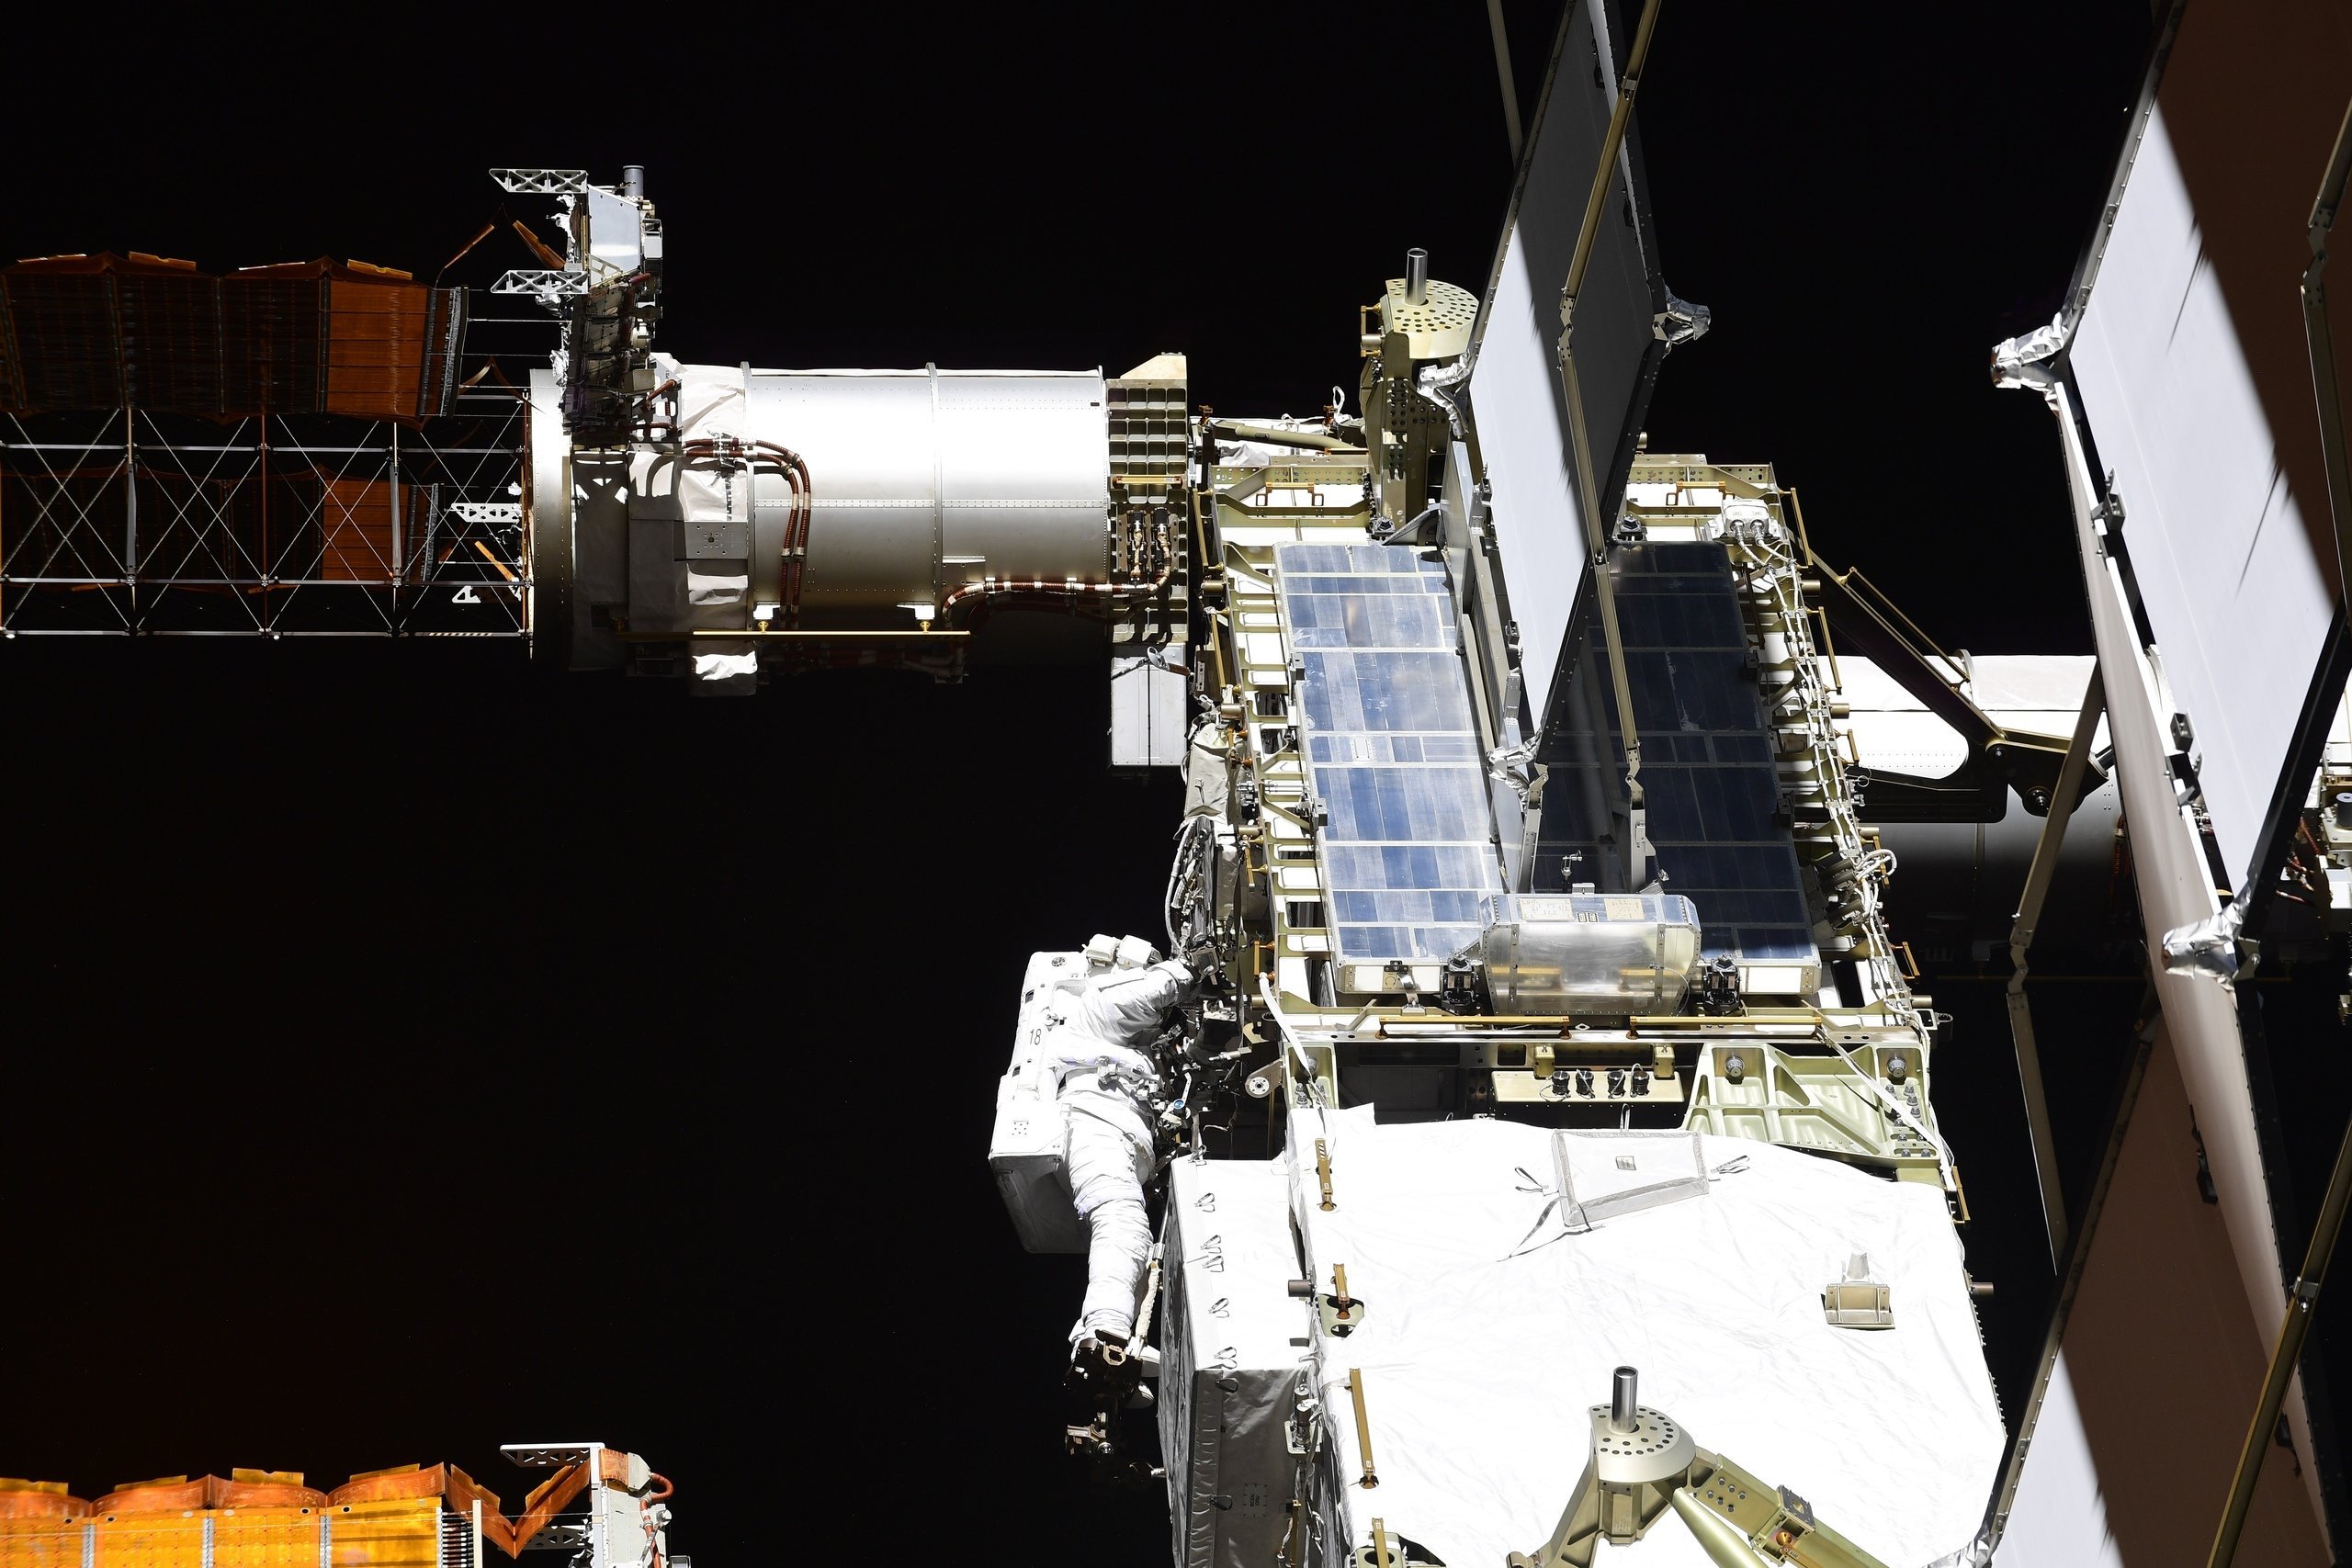 Changement de batteries et petite fuite : la Station spatiale internationale en maintenance !